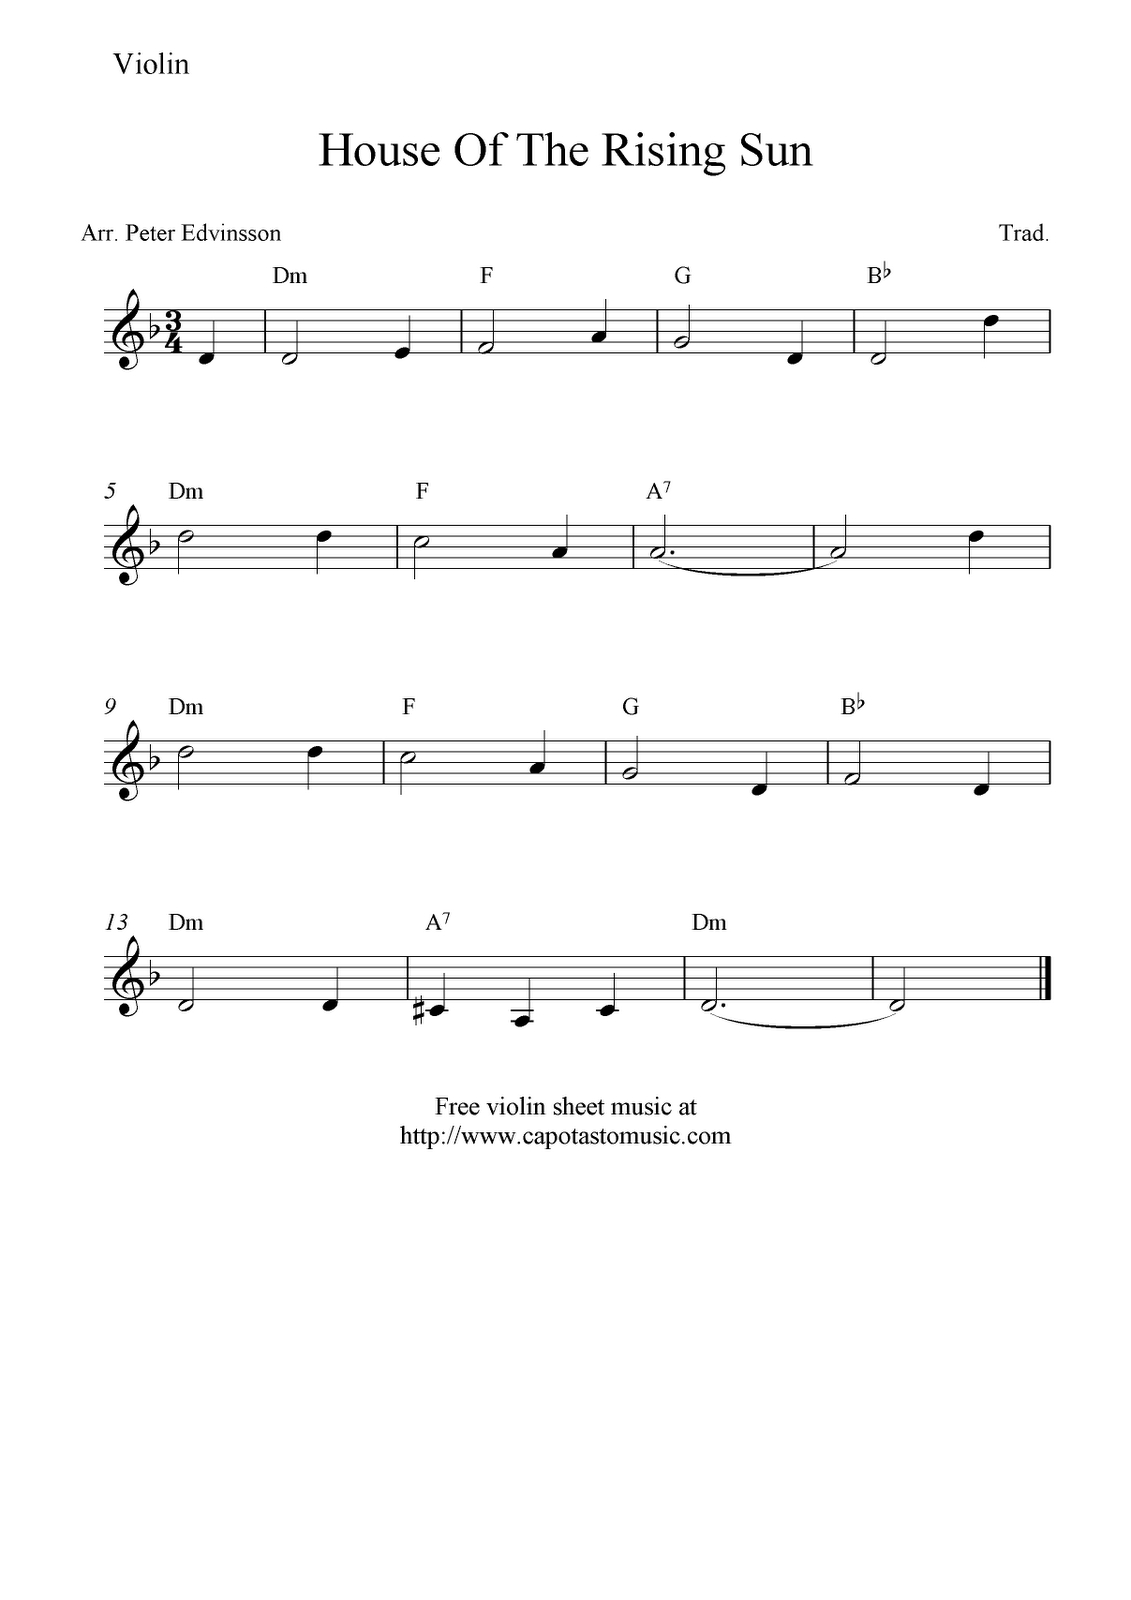 Free Violin Sheet Music | Free Sheet Music Scores: House Of The - Viola Sheet Music Free Printable